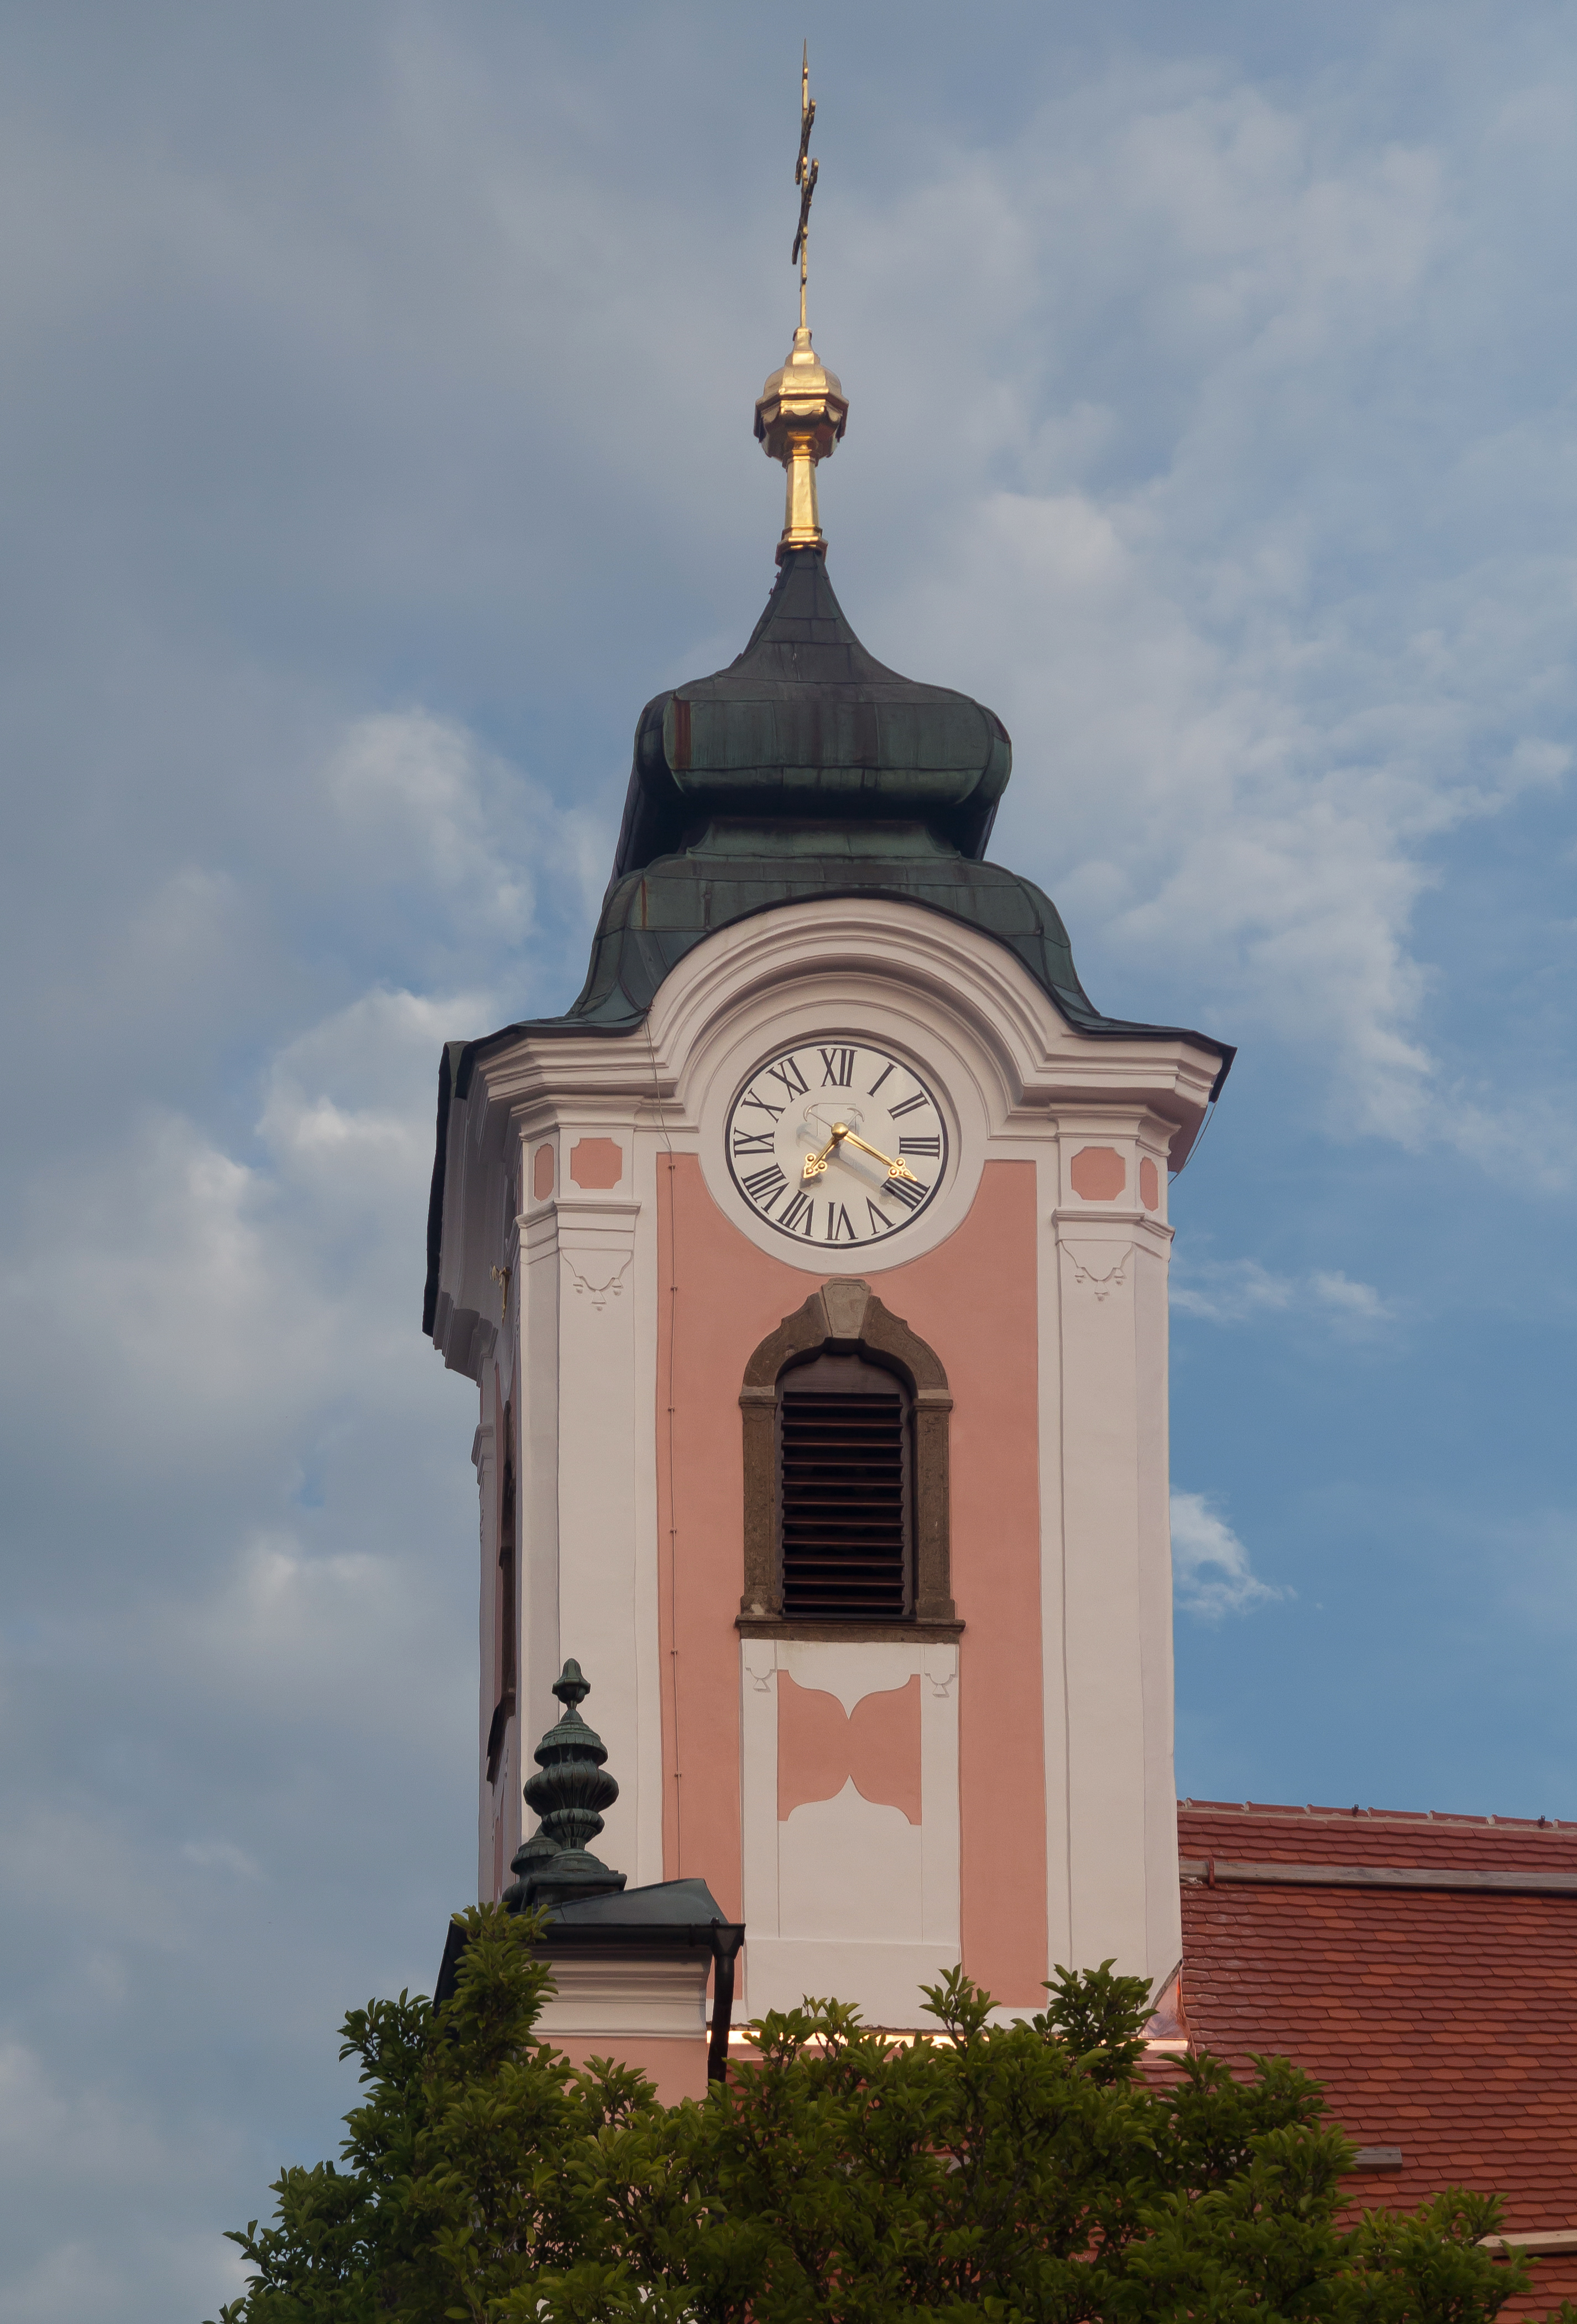 Dommelstadl, kerktoren van die Dreifaltigkeitskirche DmD-2-75-133-20 foto8 2017-08-08 19.16